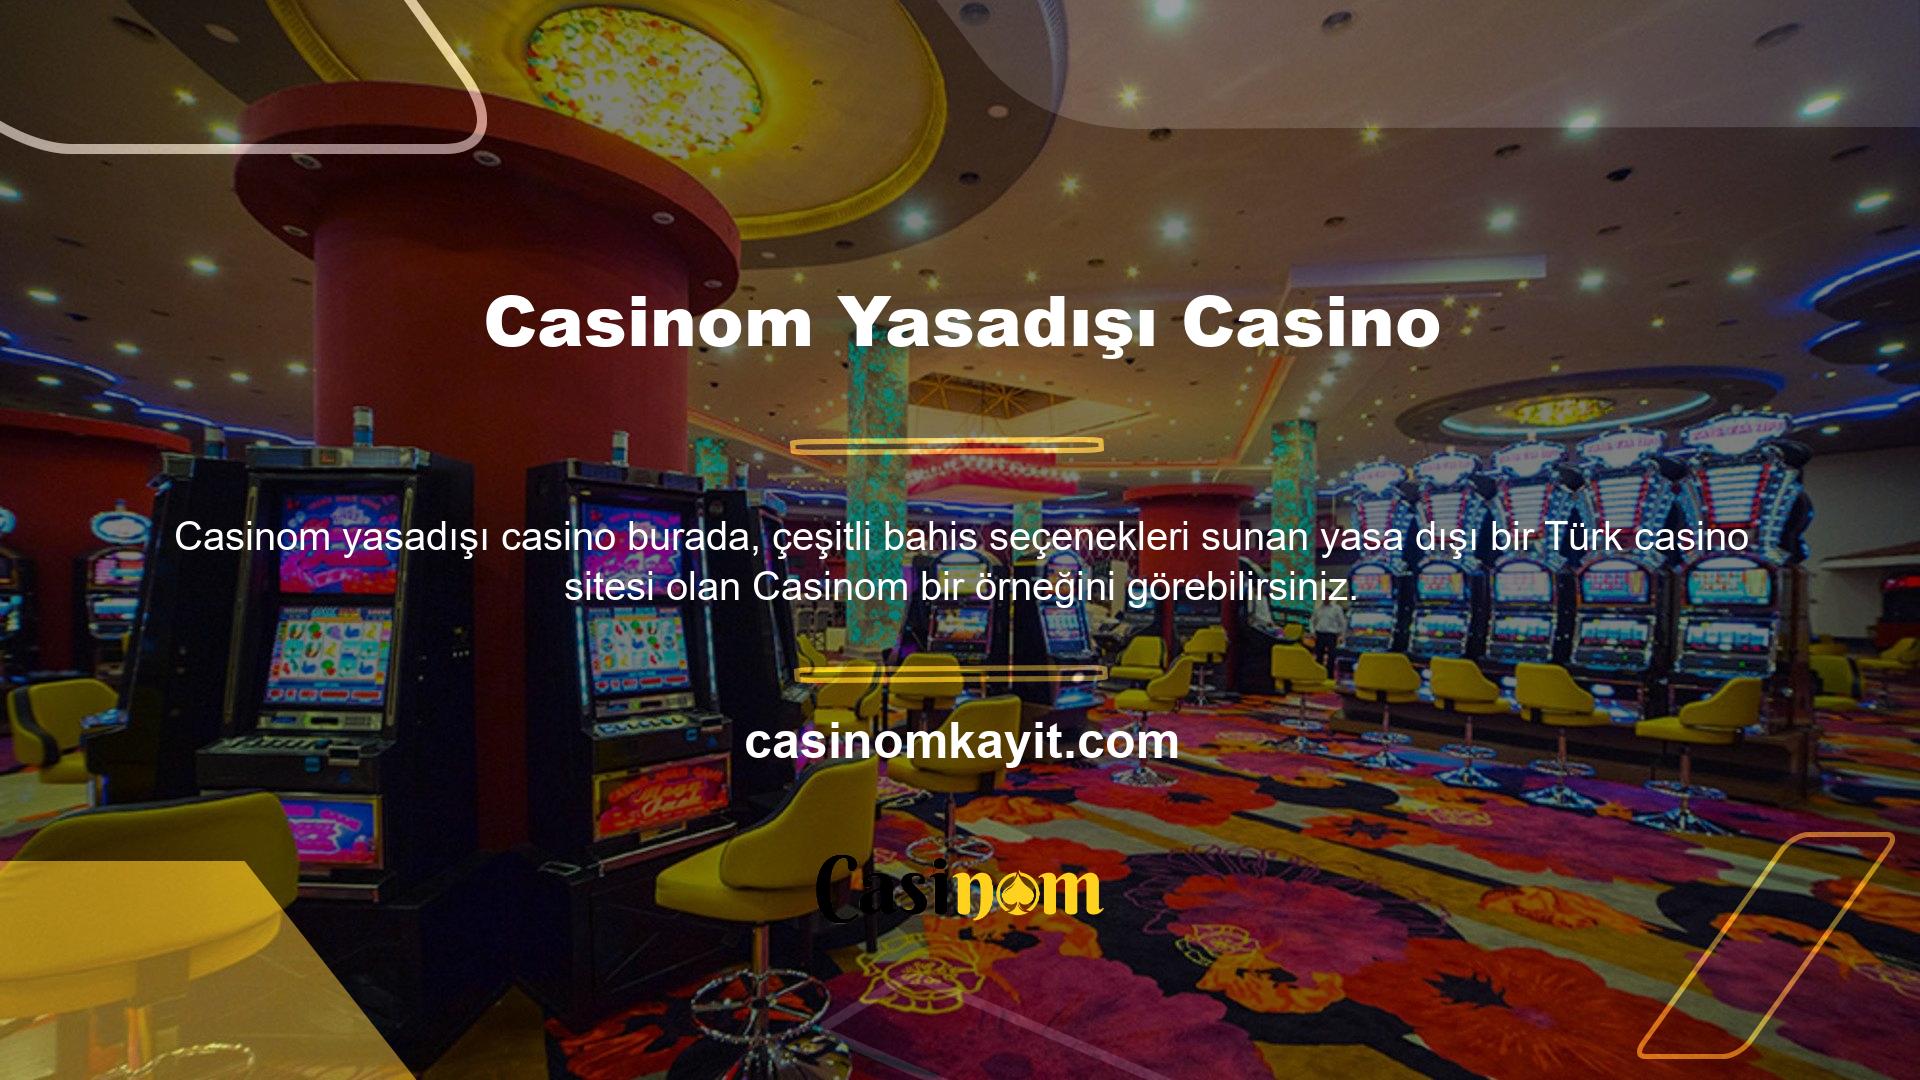 Hesabınıza erişmek ve hesabınıza para yatırmak için yasa dışı casino web sitesindeki yeni giriş adresinizi kullanabilirsiniz